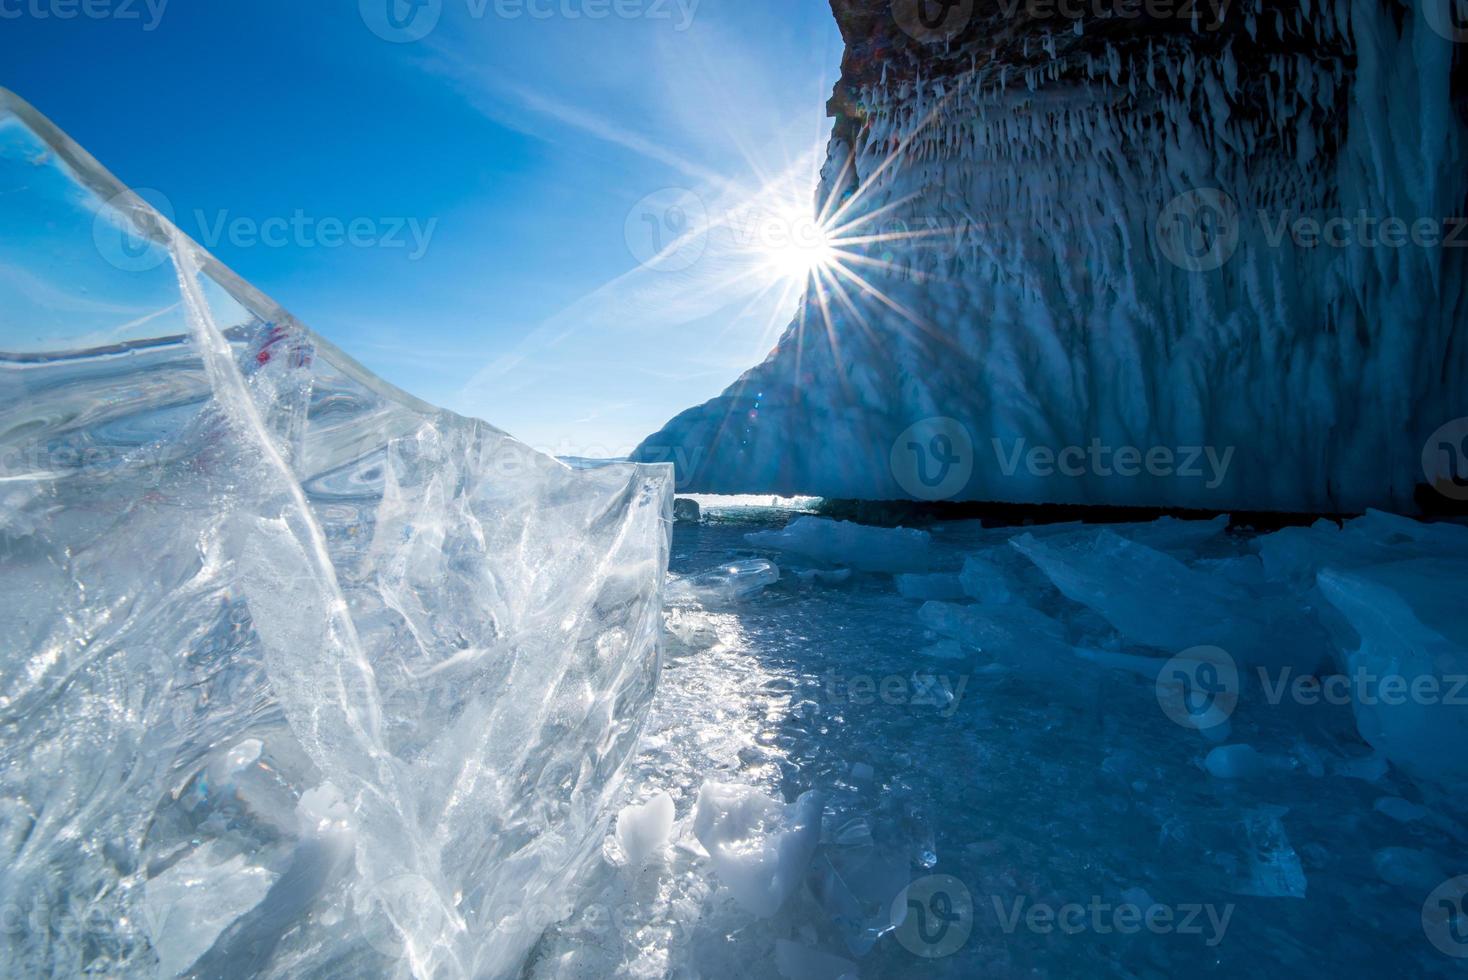 paisaje de natural rotura hielo en congelado agua en lago Baikal, Siberia, Rusia. foto